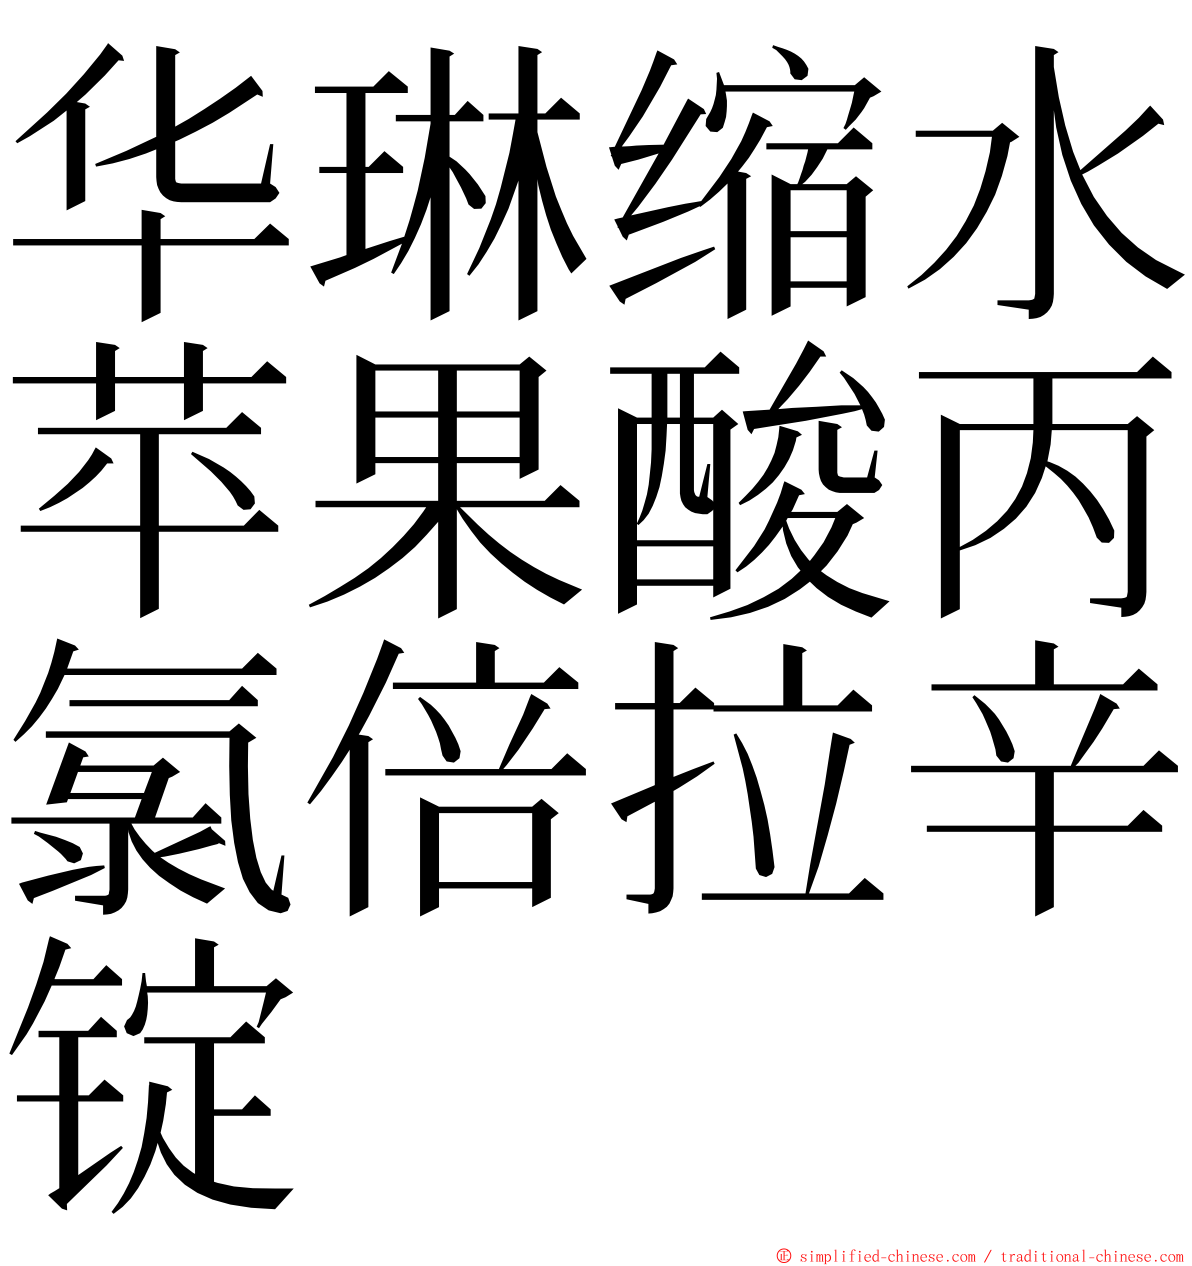 华琳缩水苹果酸丙氯倍拉辛锭 ming font